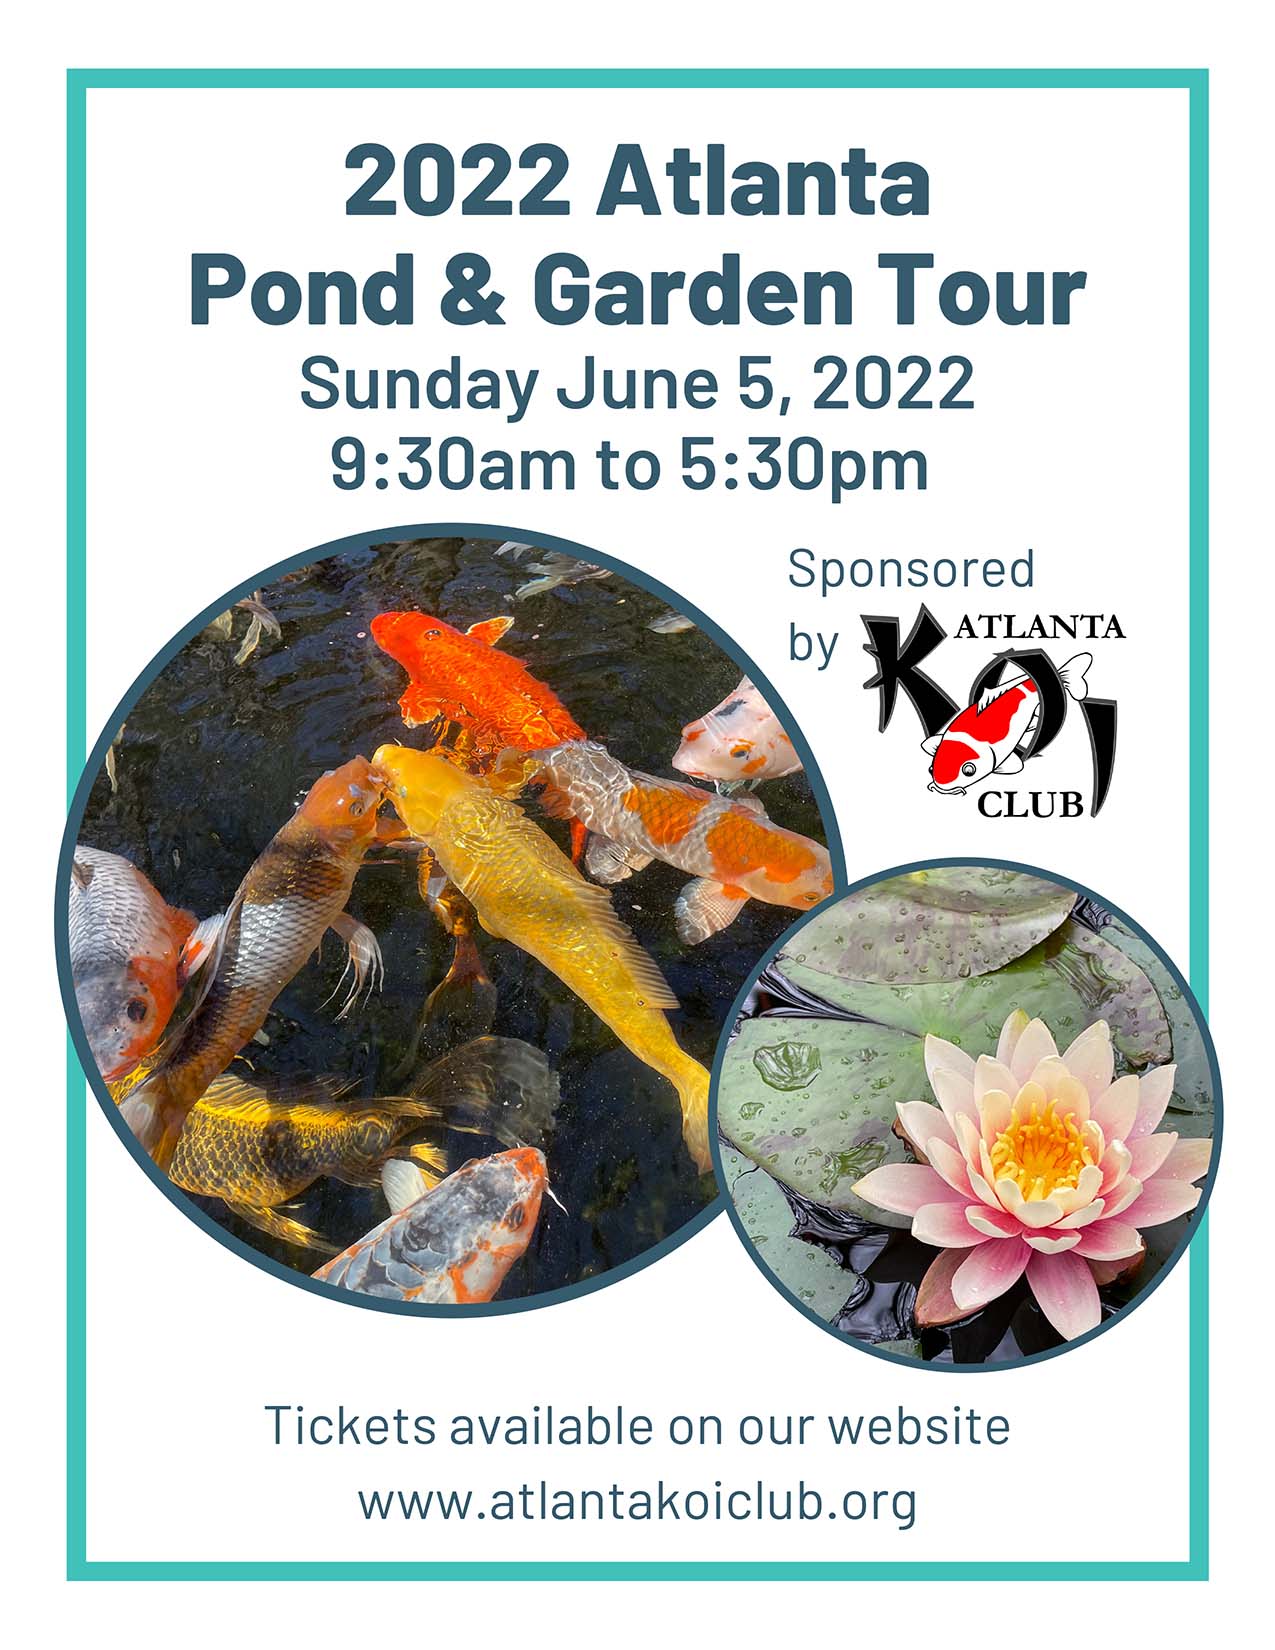 2022 Pond Tour Atlanta Koi Club